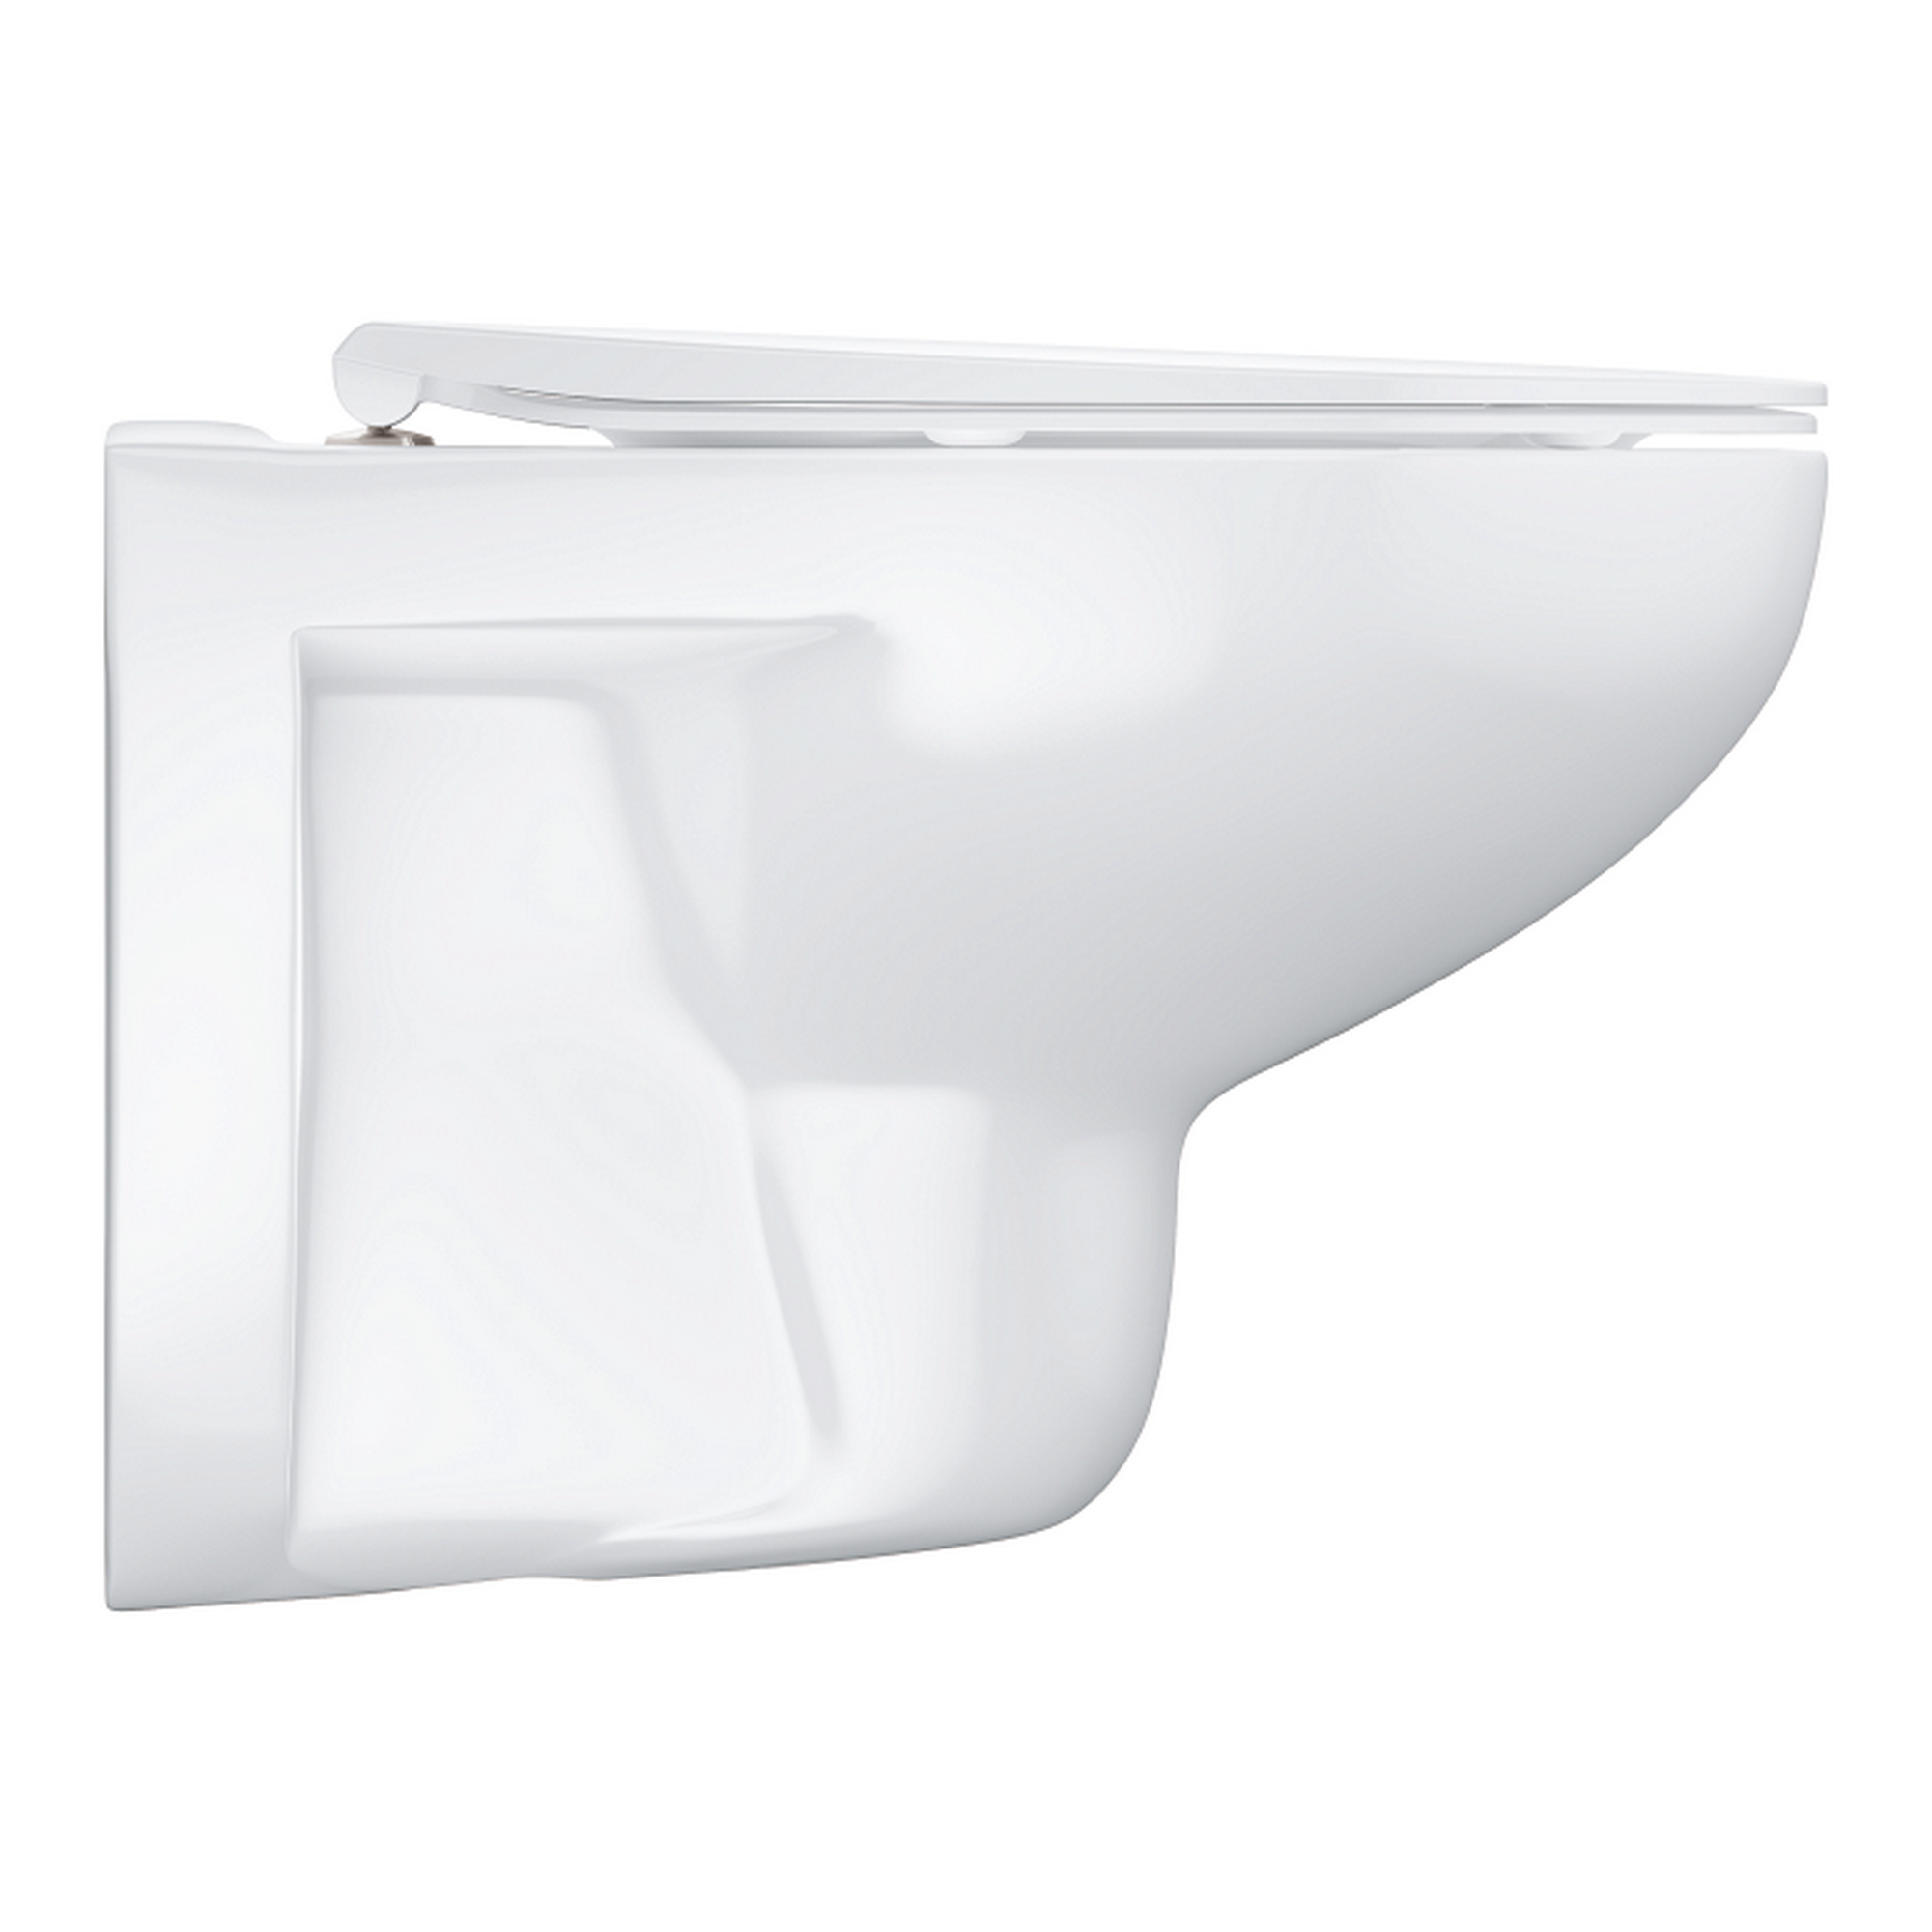 Wand-Tiefspül-WC 'Bau Keramik' weiß mit WC-Sitz spülrandlos + product picture